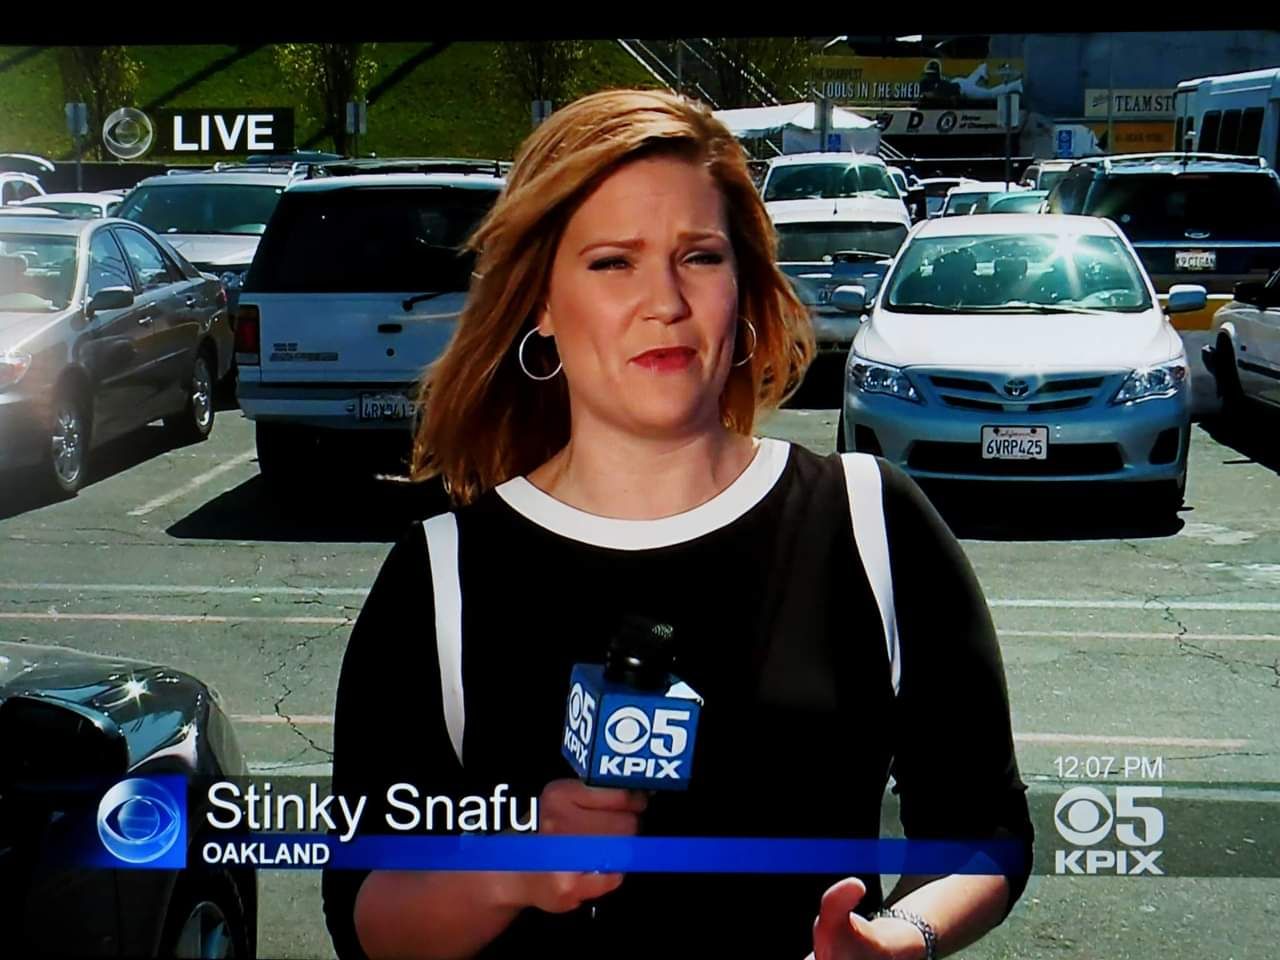 Weird name for a reporter...